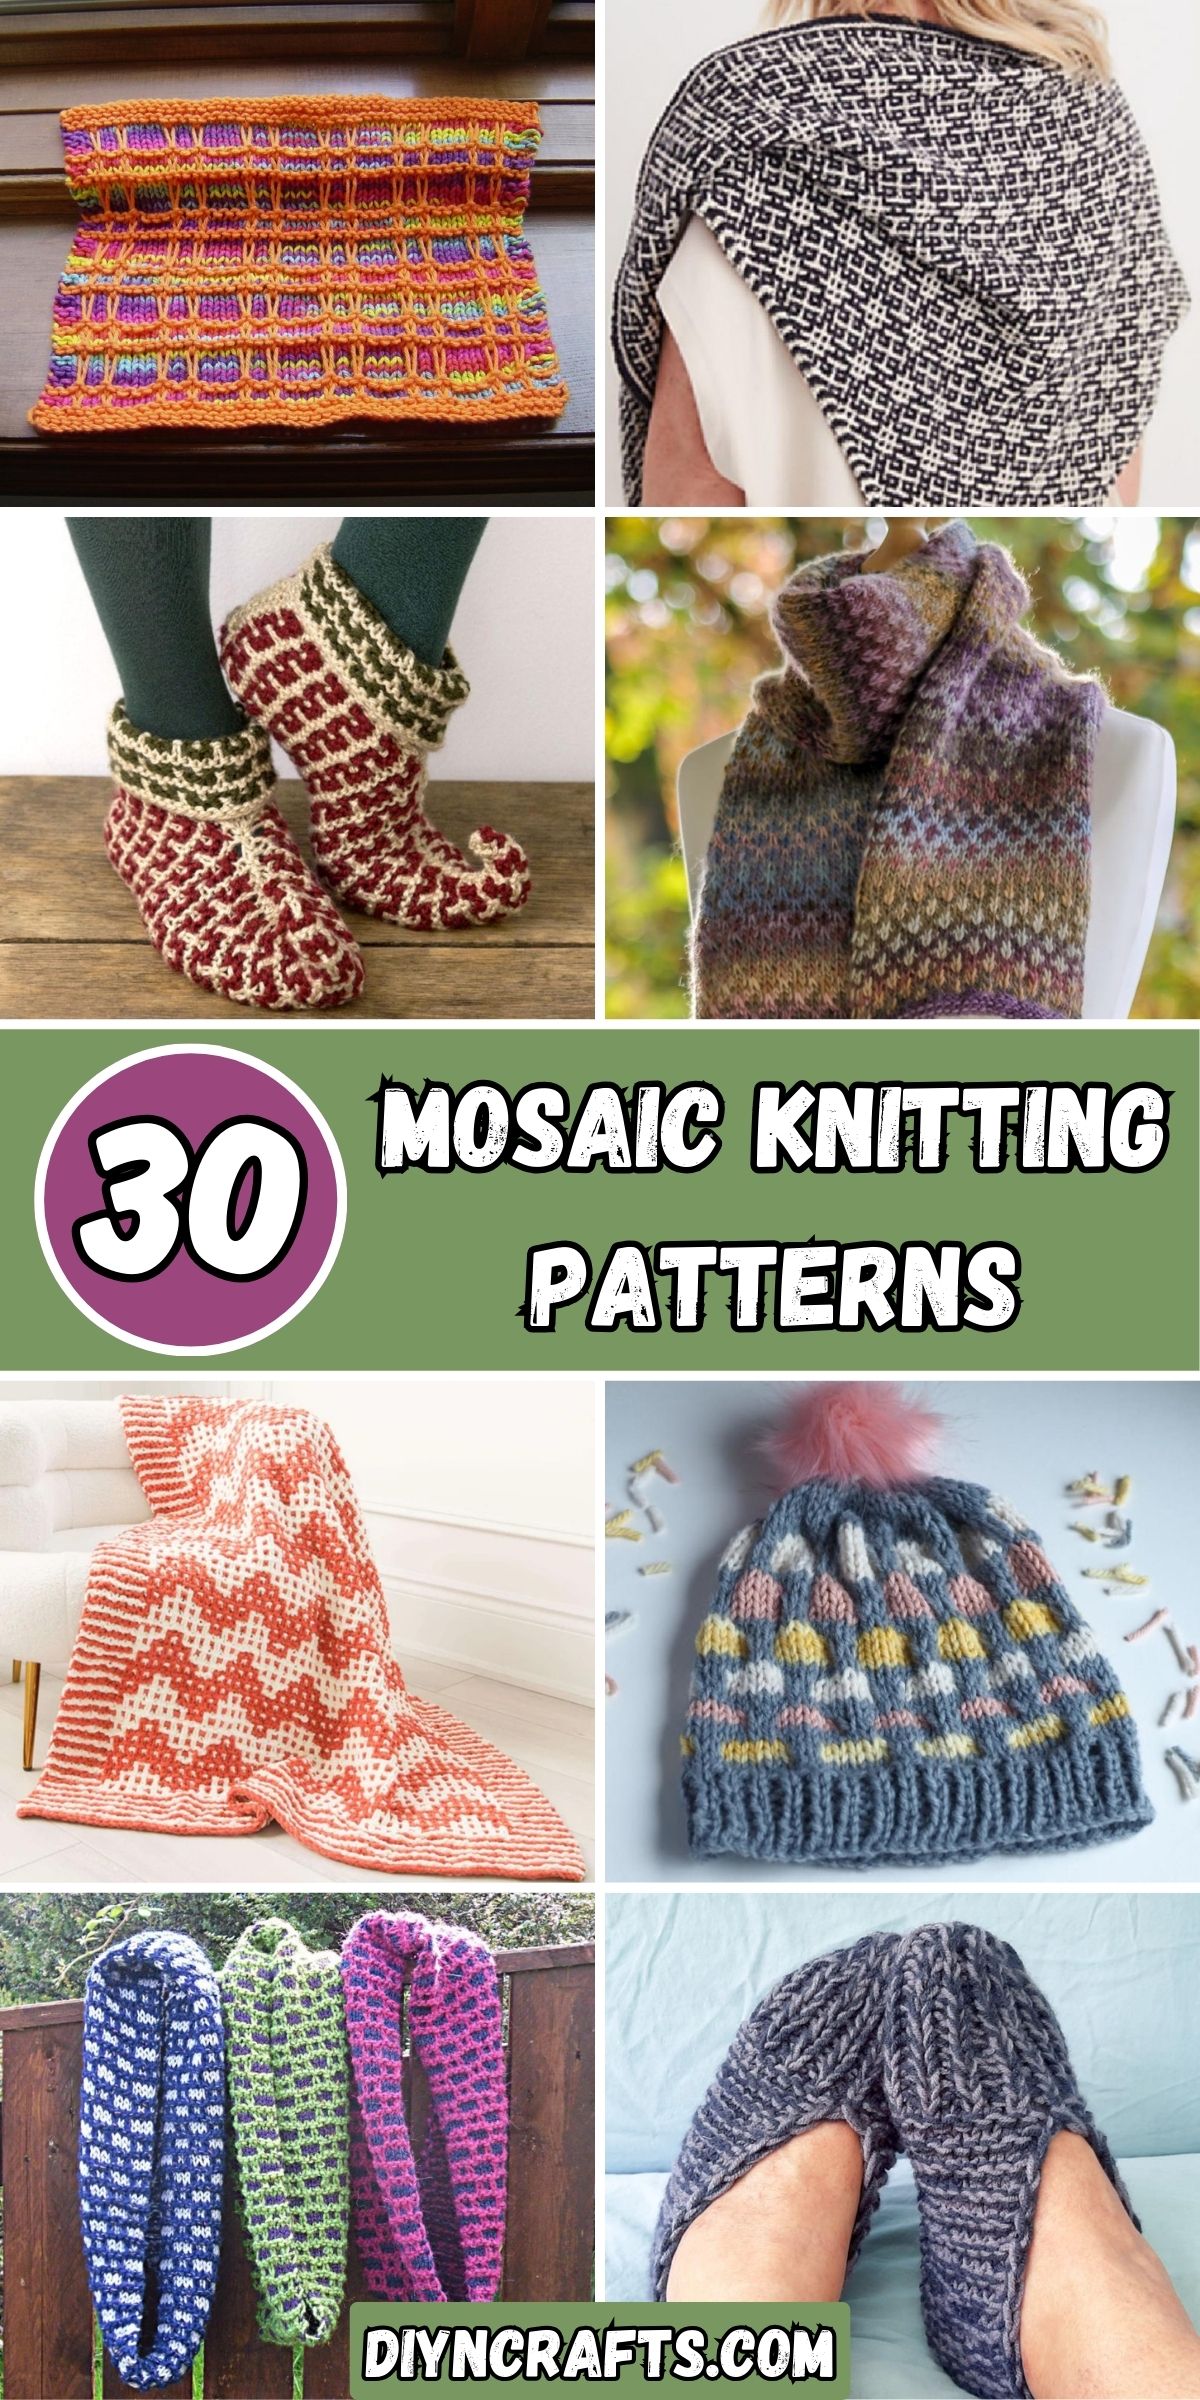 30 Mosaic Knitting Patterns collage.